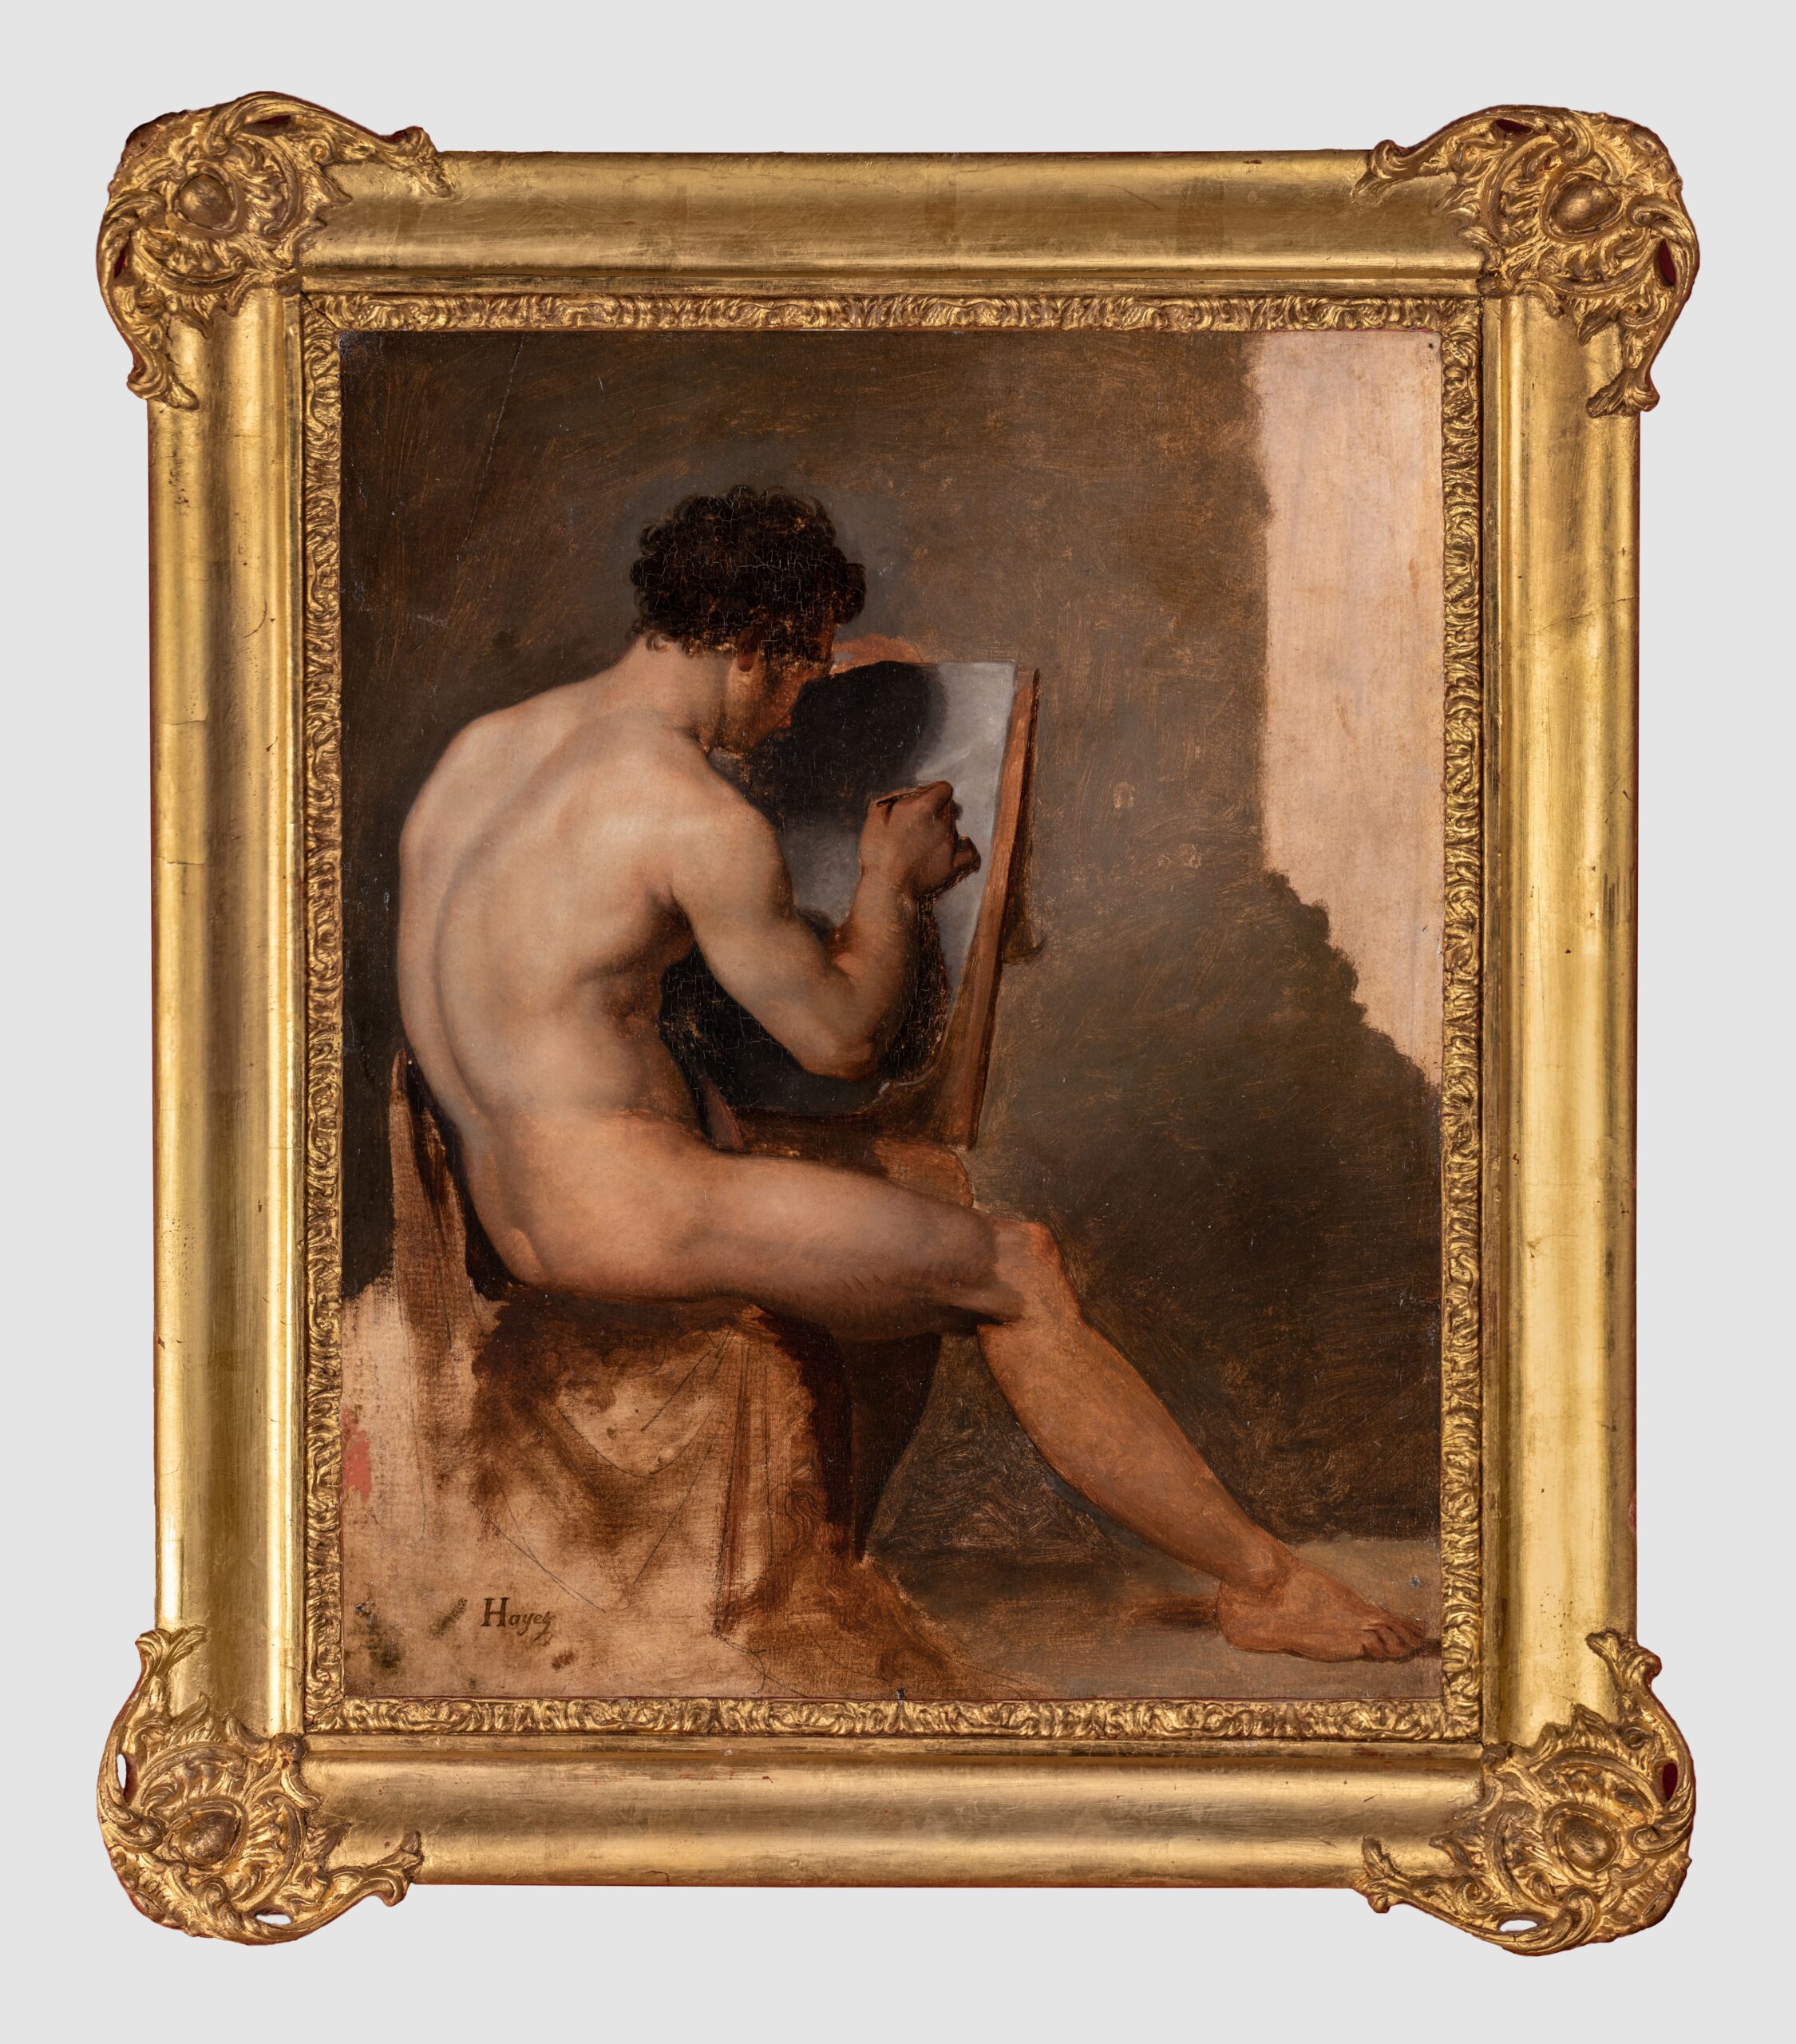 Francesco Hayez (Venezia 1791 – Milano 1882) Nudo accademico in atto di disegnare 1812 c. olio su carta cm. 41,6 x 33,5